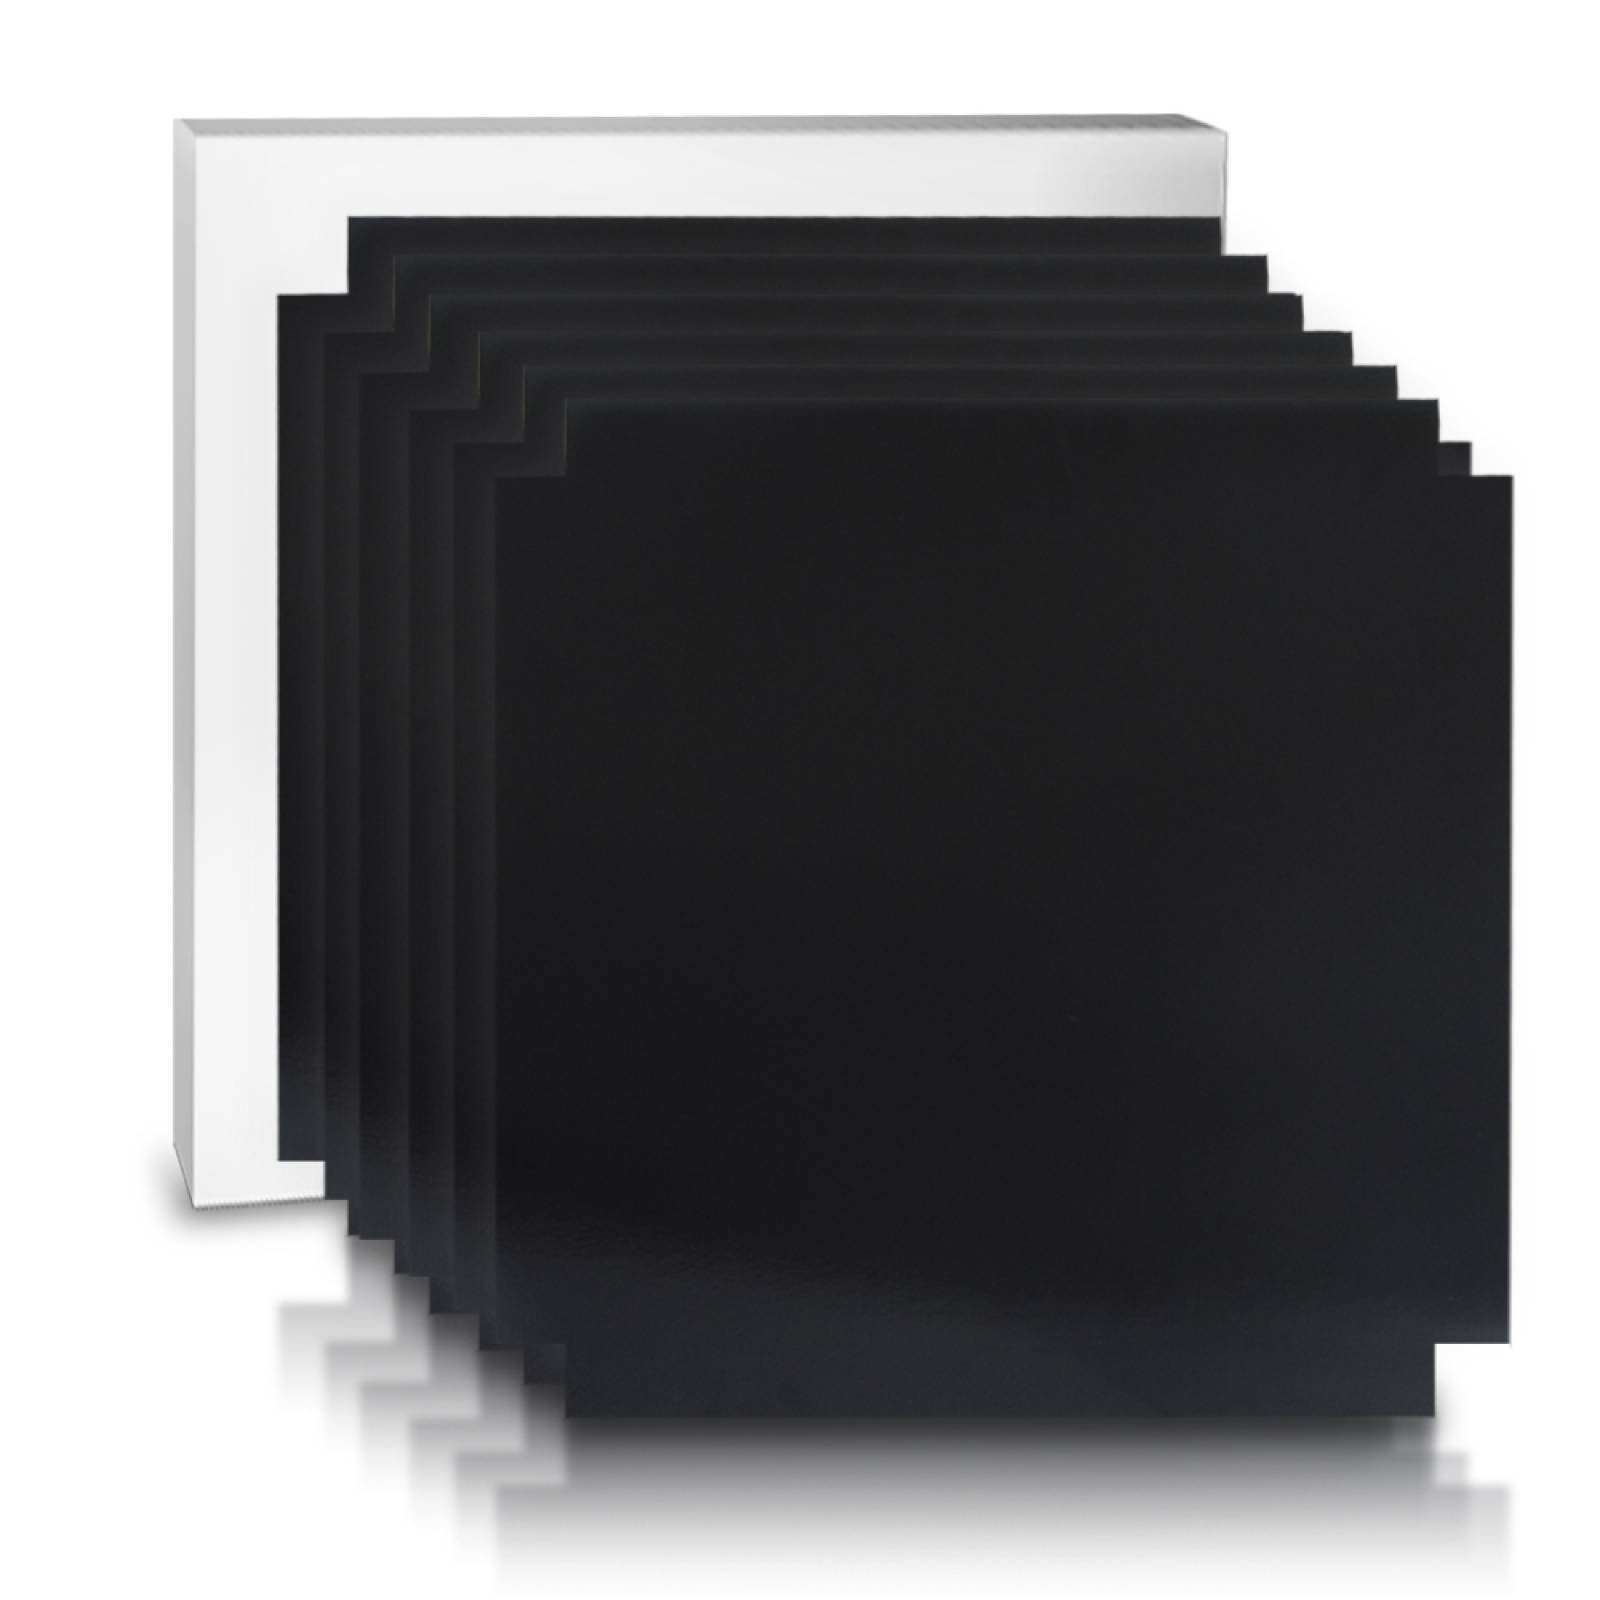 Aislante Cerámico Protector Térmico para Pared de 55 x 55 cm Negro, Paquete 6 Piezas, Mod: 1PTPP6Ne